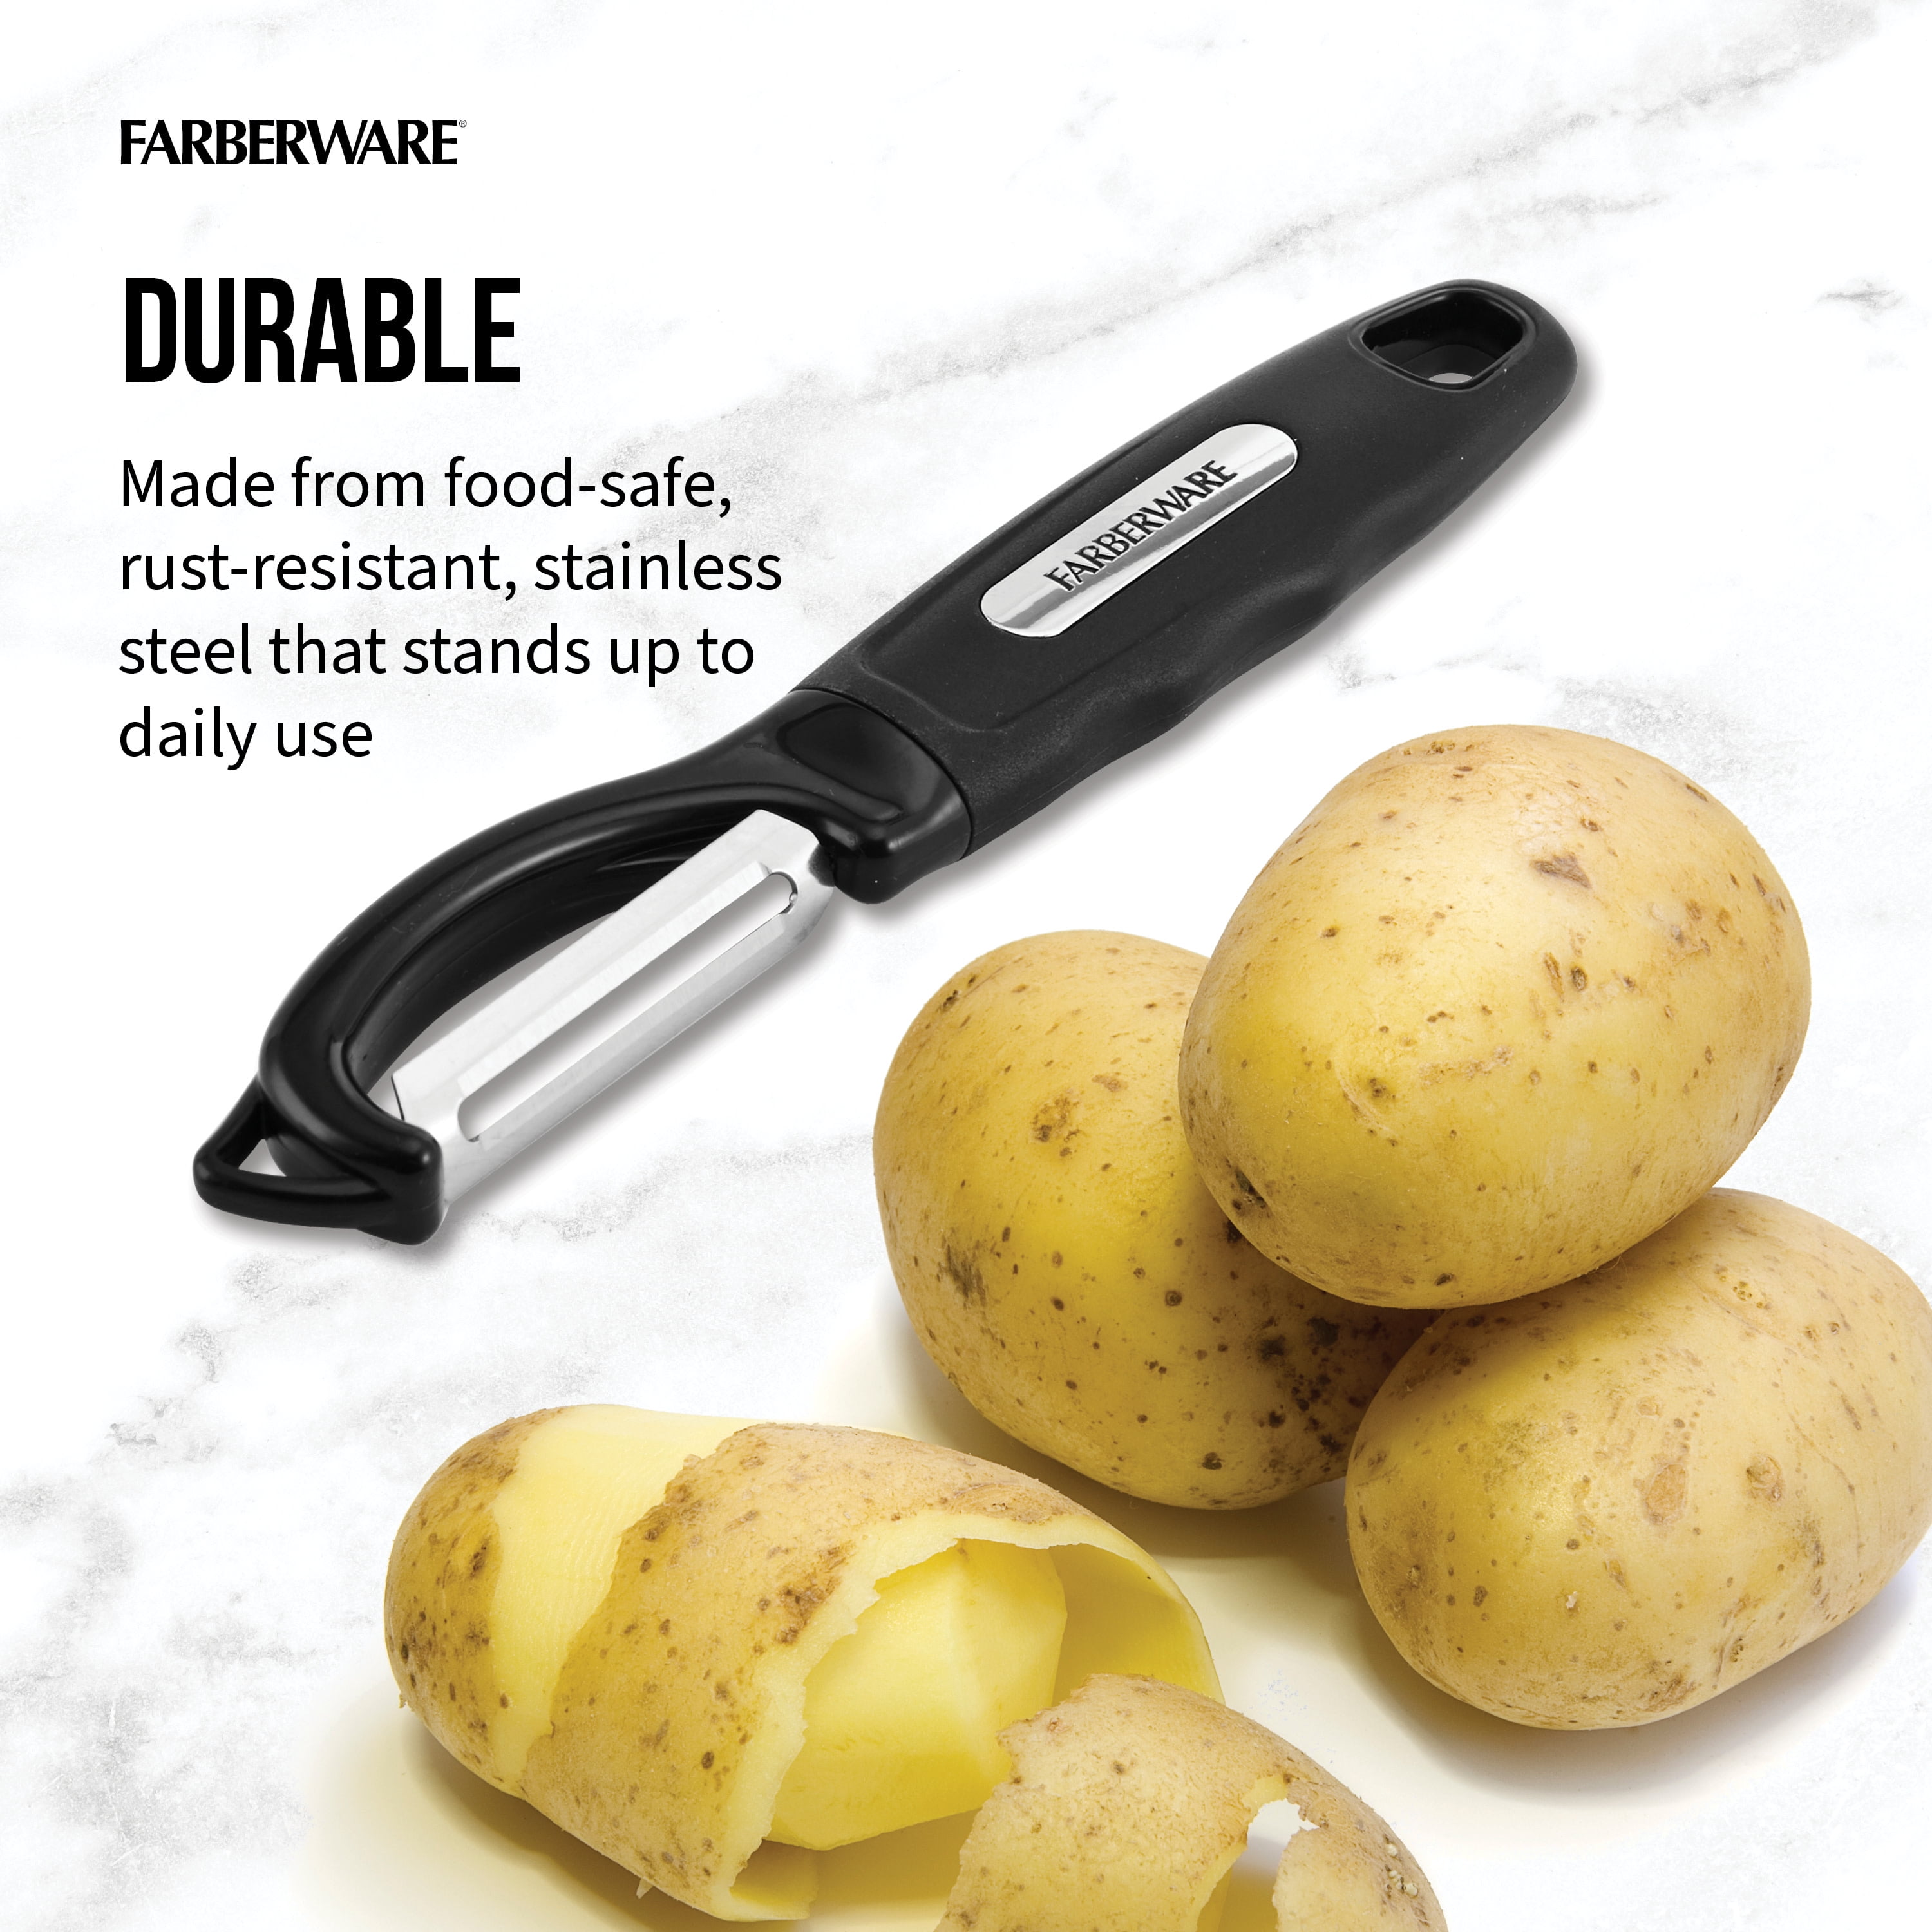 Farberware Euro Peeler Potato Peeler Item 5287729 New with tags